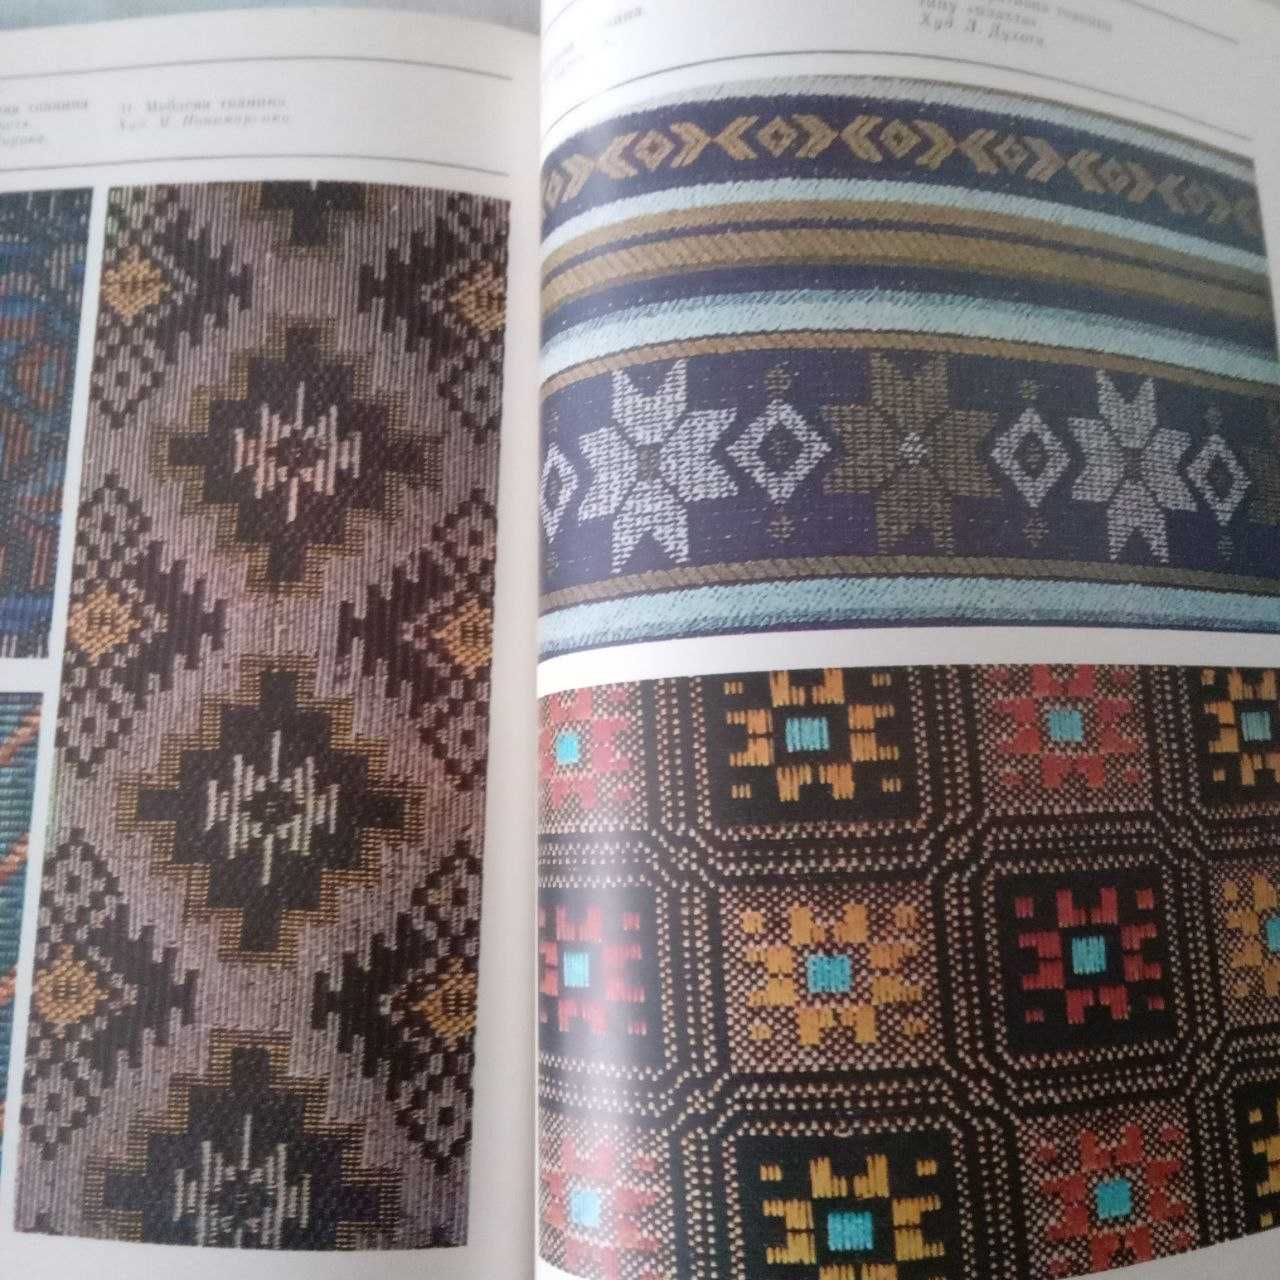 Книга "Сучасні українські художні тканини"